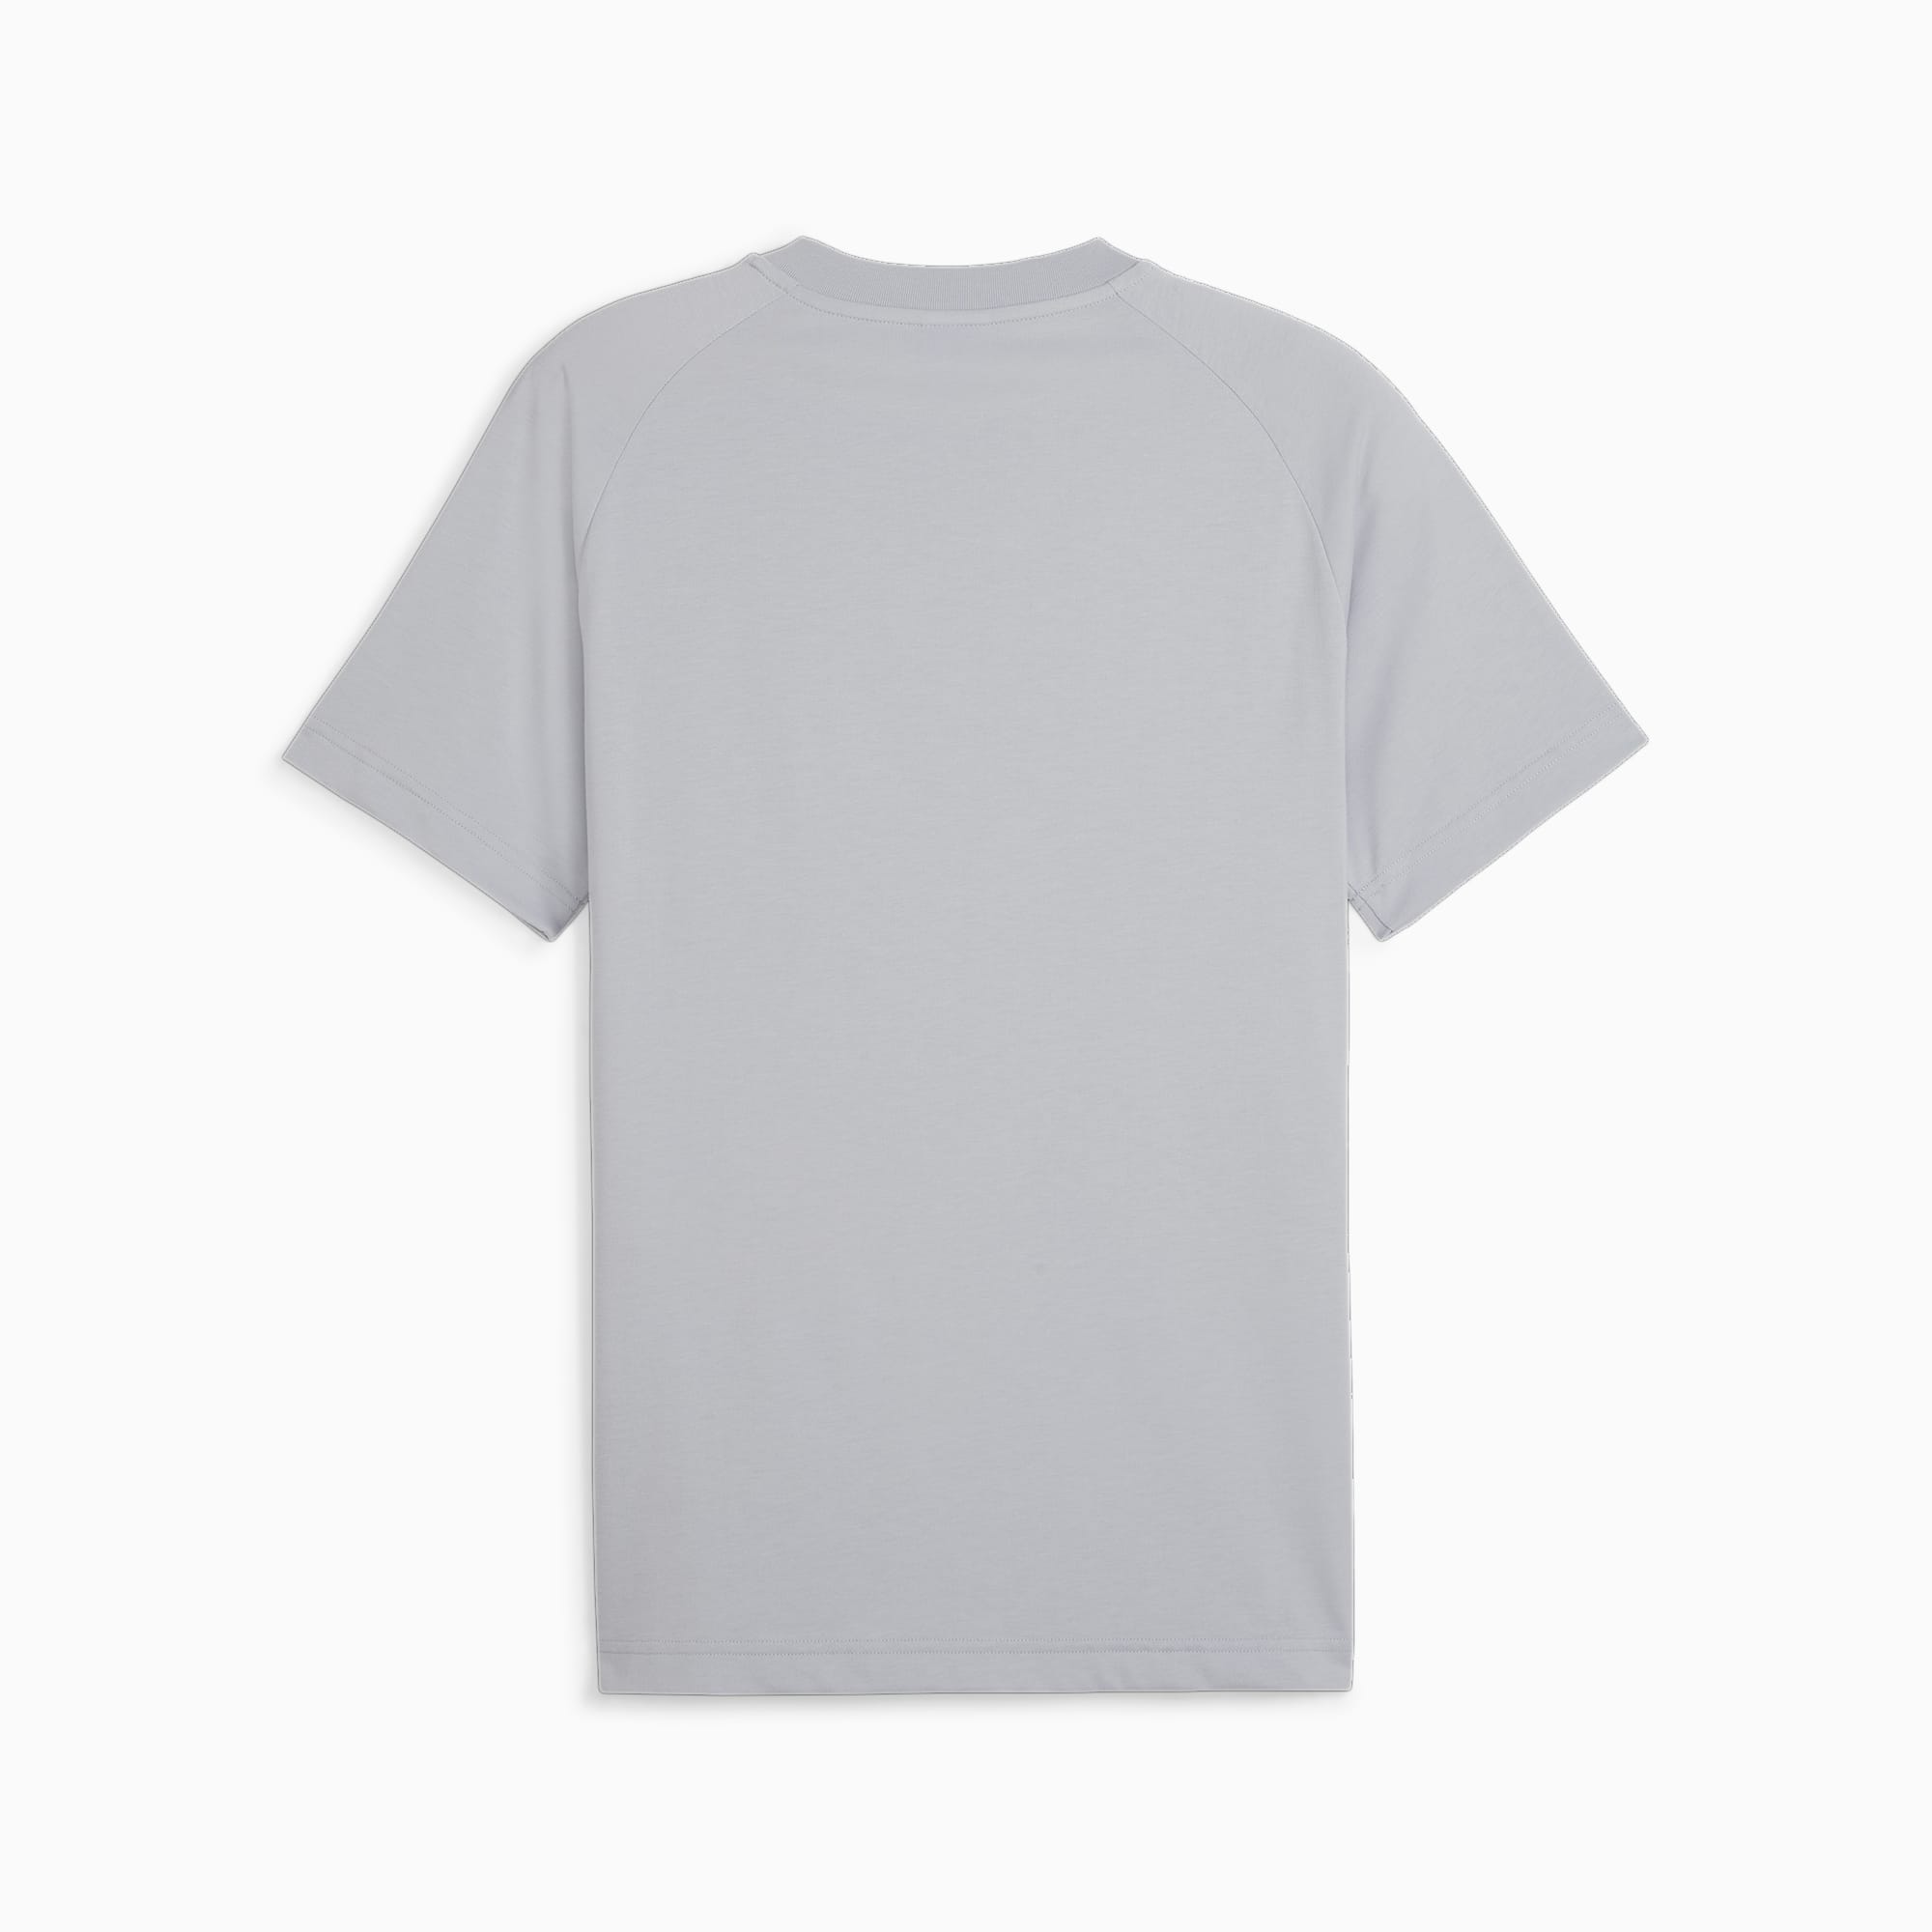 PUMATECH T-Shirt Mit Tasche Herren, Grau, Größe: S, Kleidung